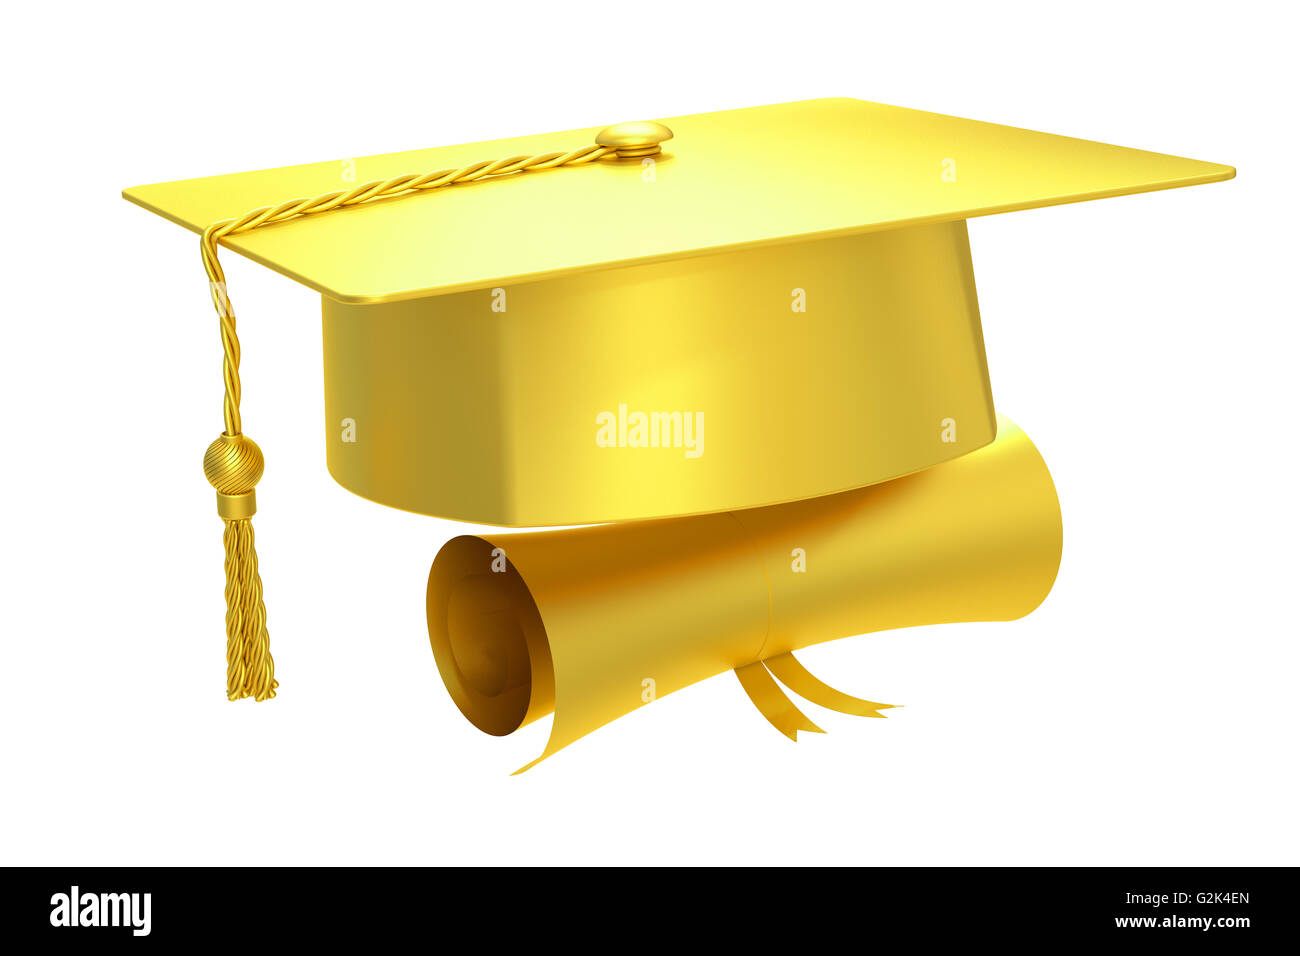 Diplôme graduation cap d'or, rendu 3D isolé sur fond blanc Banque D'Images